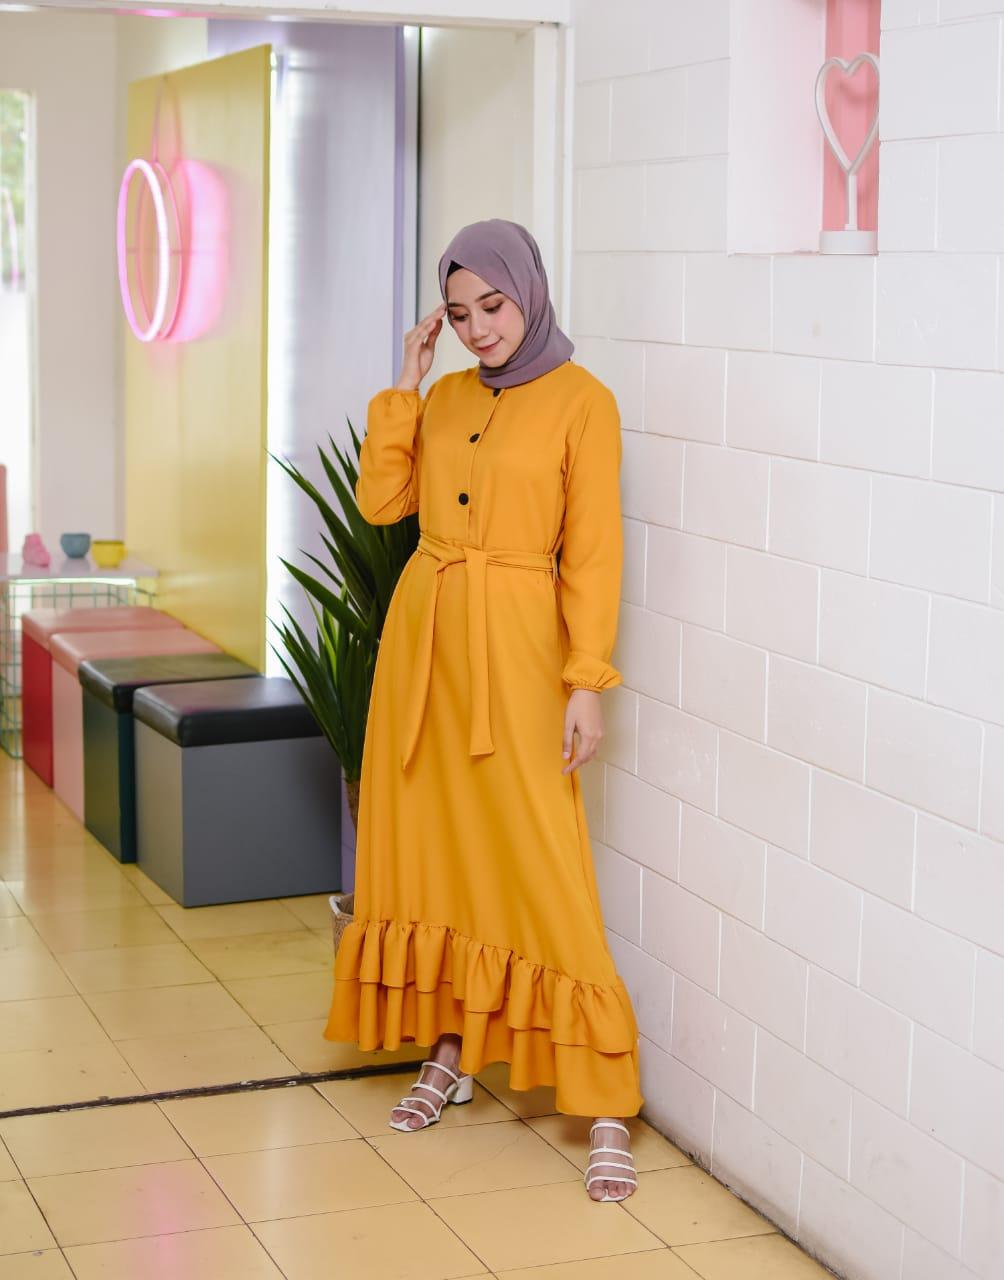 Baju Muslim Modern Gamis CINDY DRESS Moscrepe Baju Gamis Terusan Wanita Paling Laris Dan Trendy Baju Panjang Polos Muslim Dress Pesta Terbaru Maxi Muslimah Termurah Pakaian Modis Simple Casual Terbaru 2019 gamis wanita